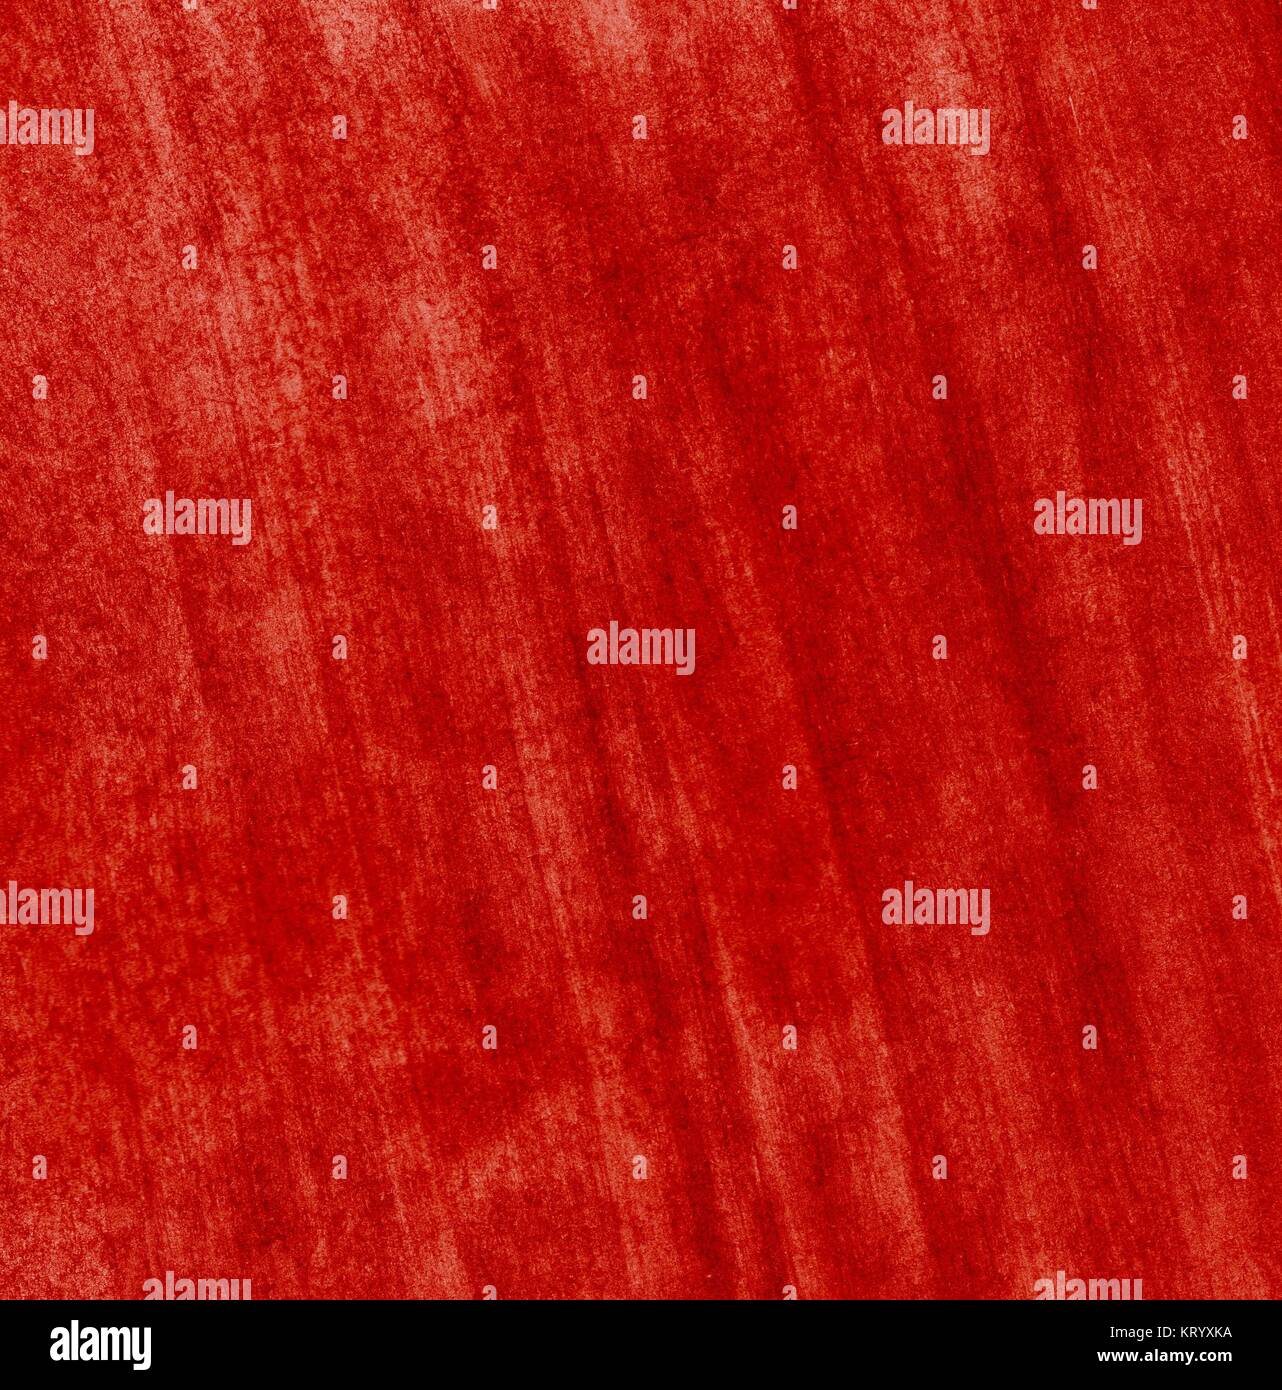 Ungleichmäßige Oberfläche als Hintergrund mit gemalter roter Farbe Stock Photo